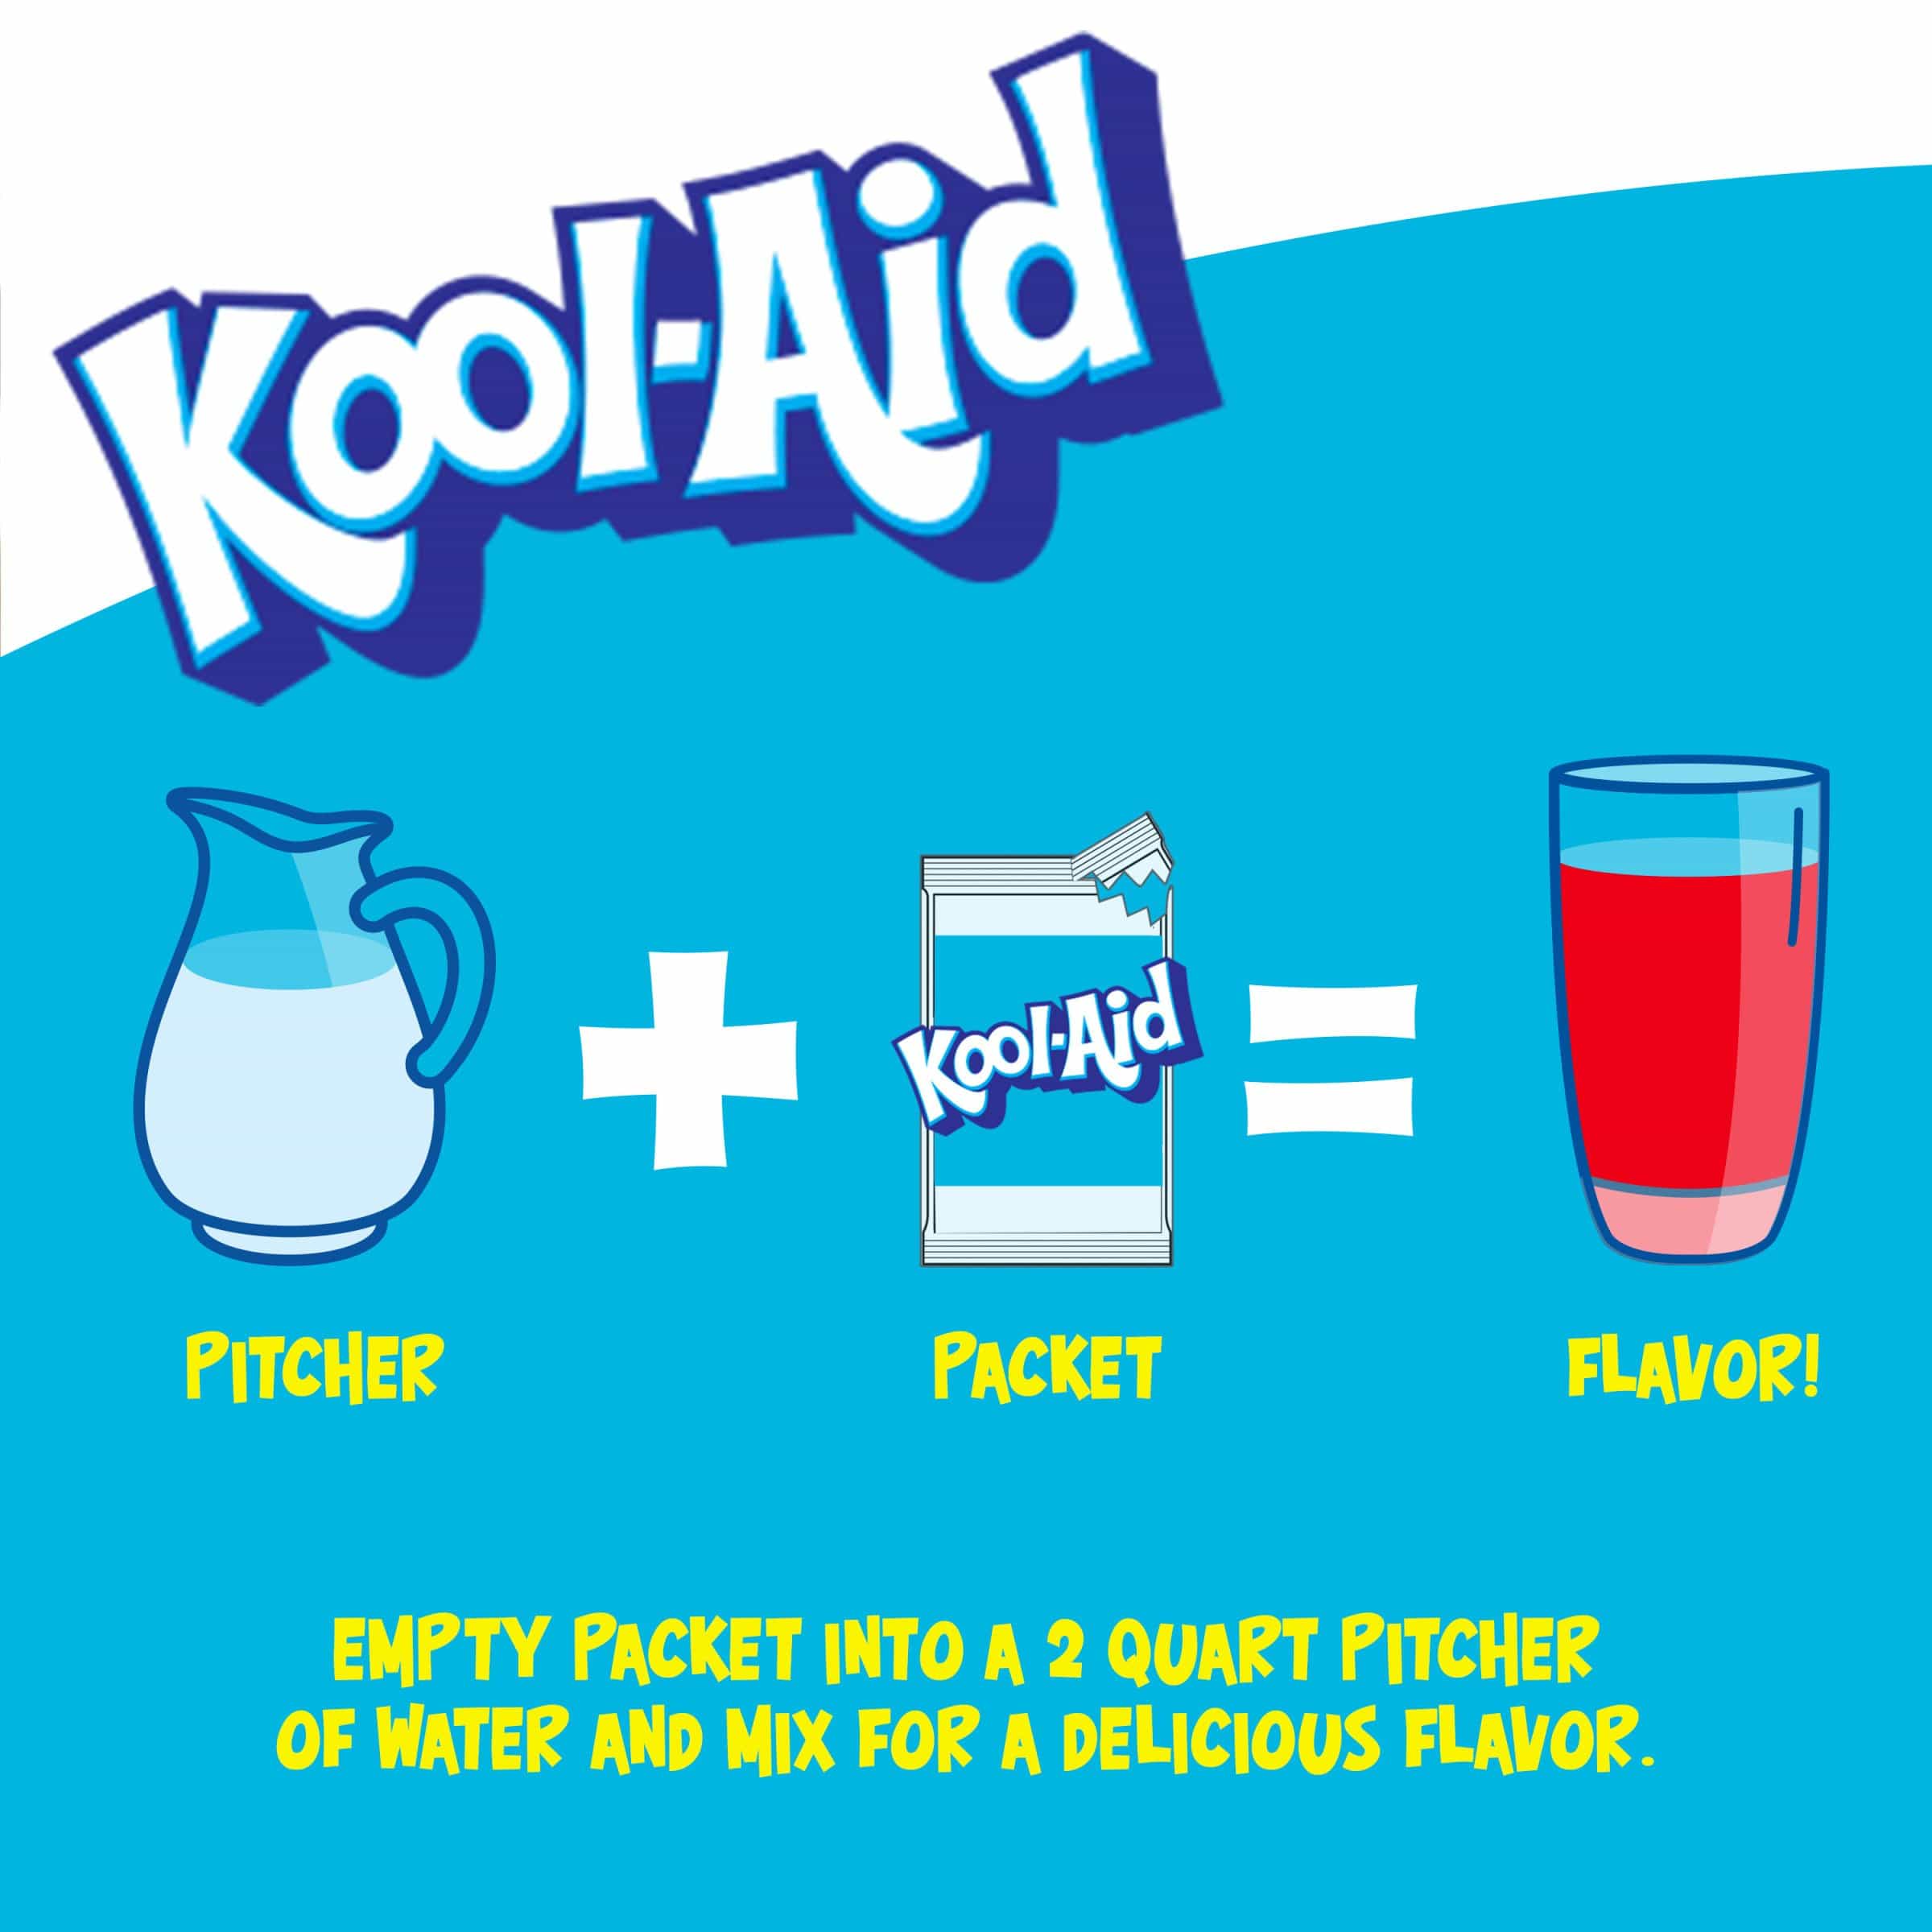 Une affiche blanc au-dessus et bleu en-dessous avec une carafe blanche, un paquet de KoolAid et un verre rempli de boisson rouge